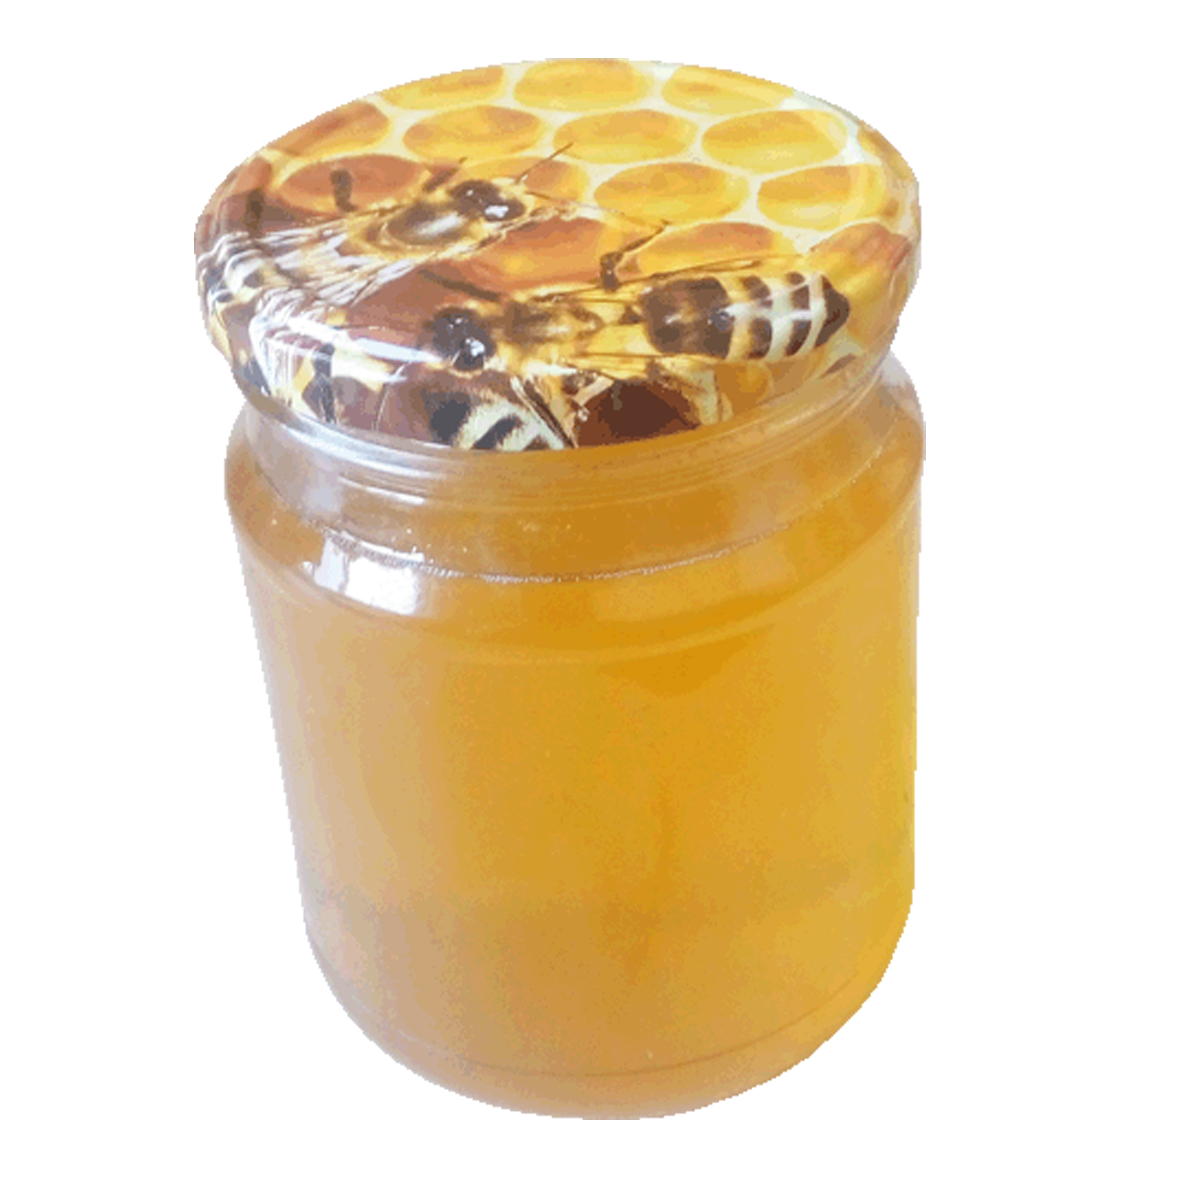 Купить мед в барнауле. Мёд гречишный натуральный 700 гр. Мёд гречишный 500мл. Липовый мед Башкирский пасека. Мед гречишный стекло 12х250гр( Стоевъ) (м).